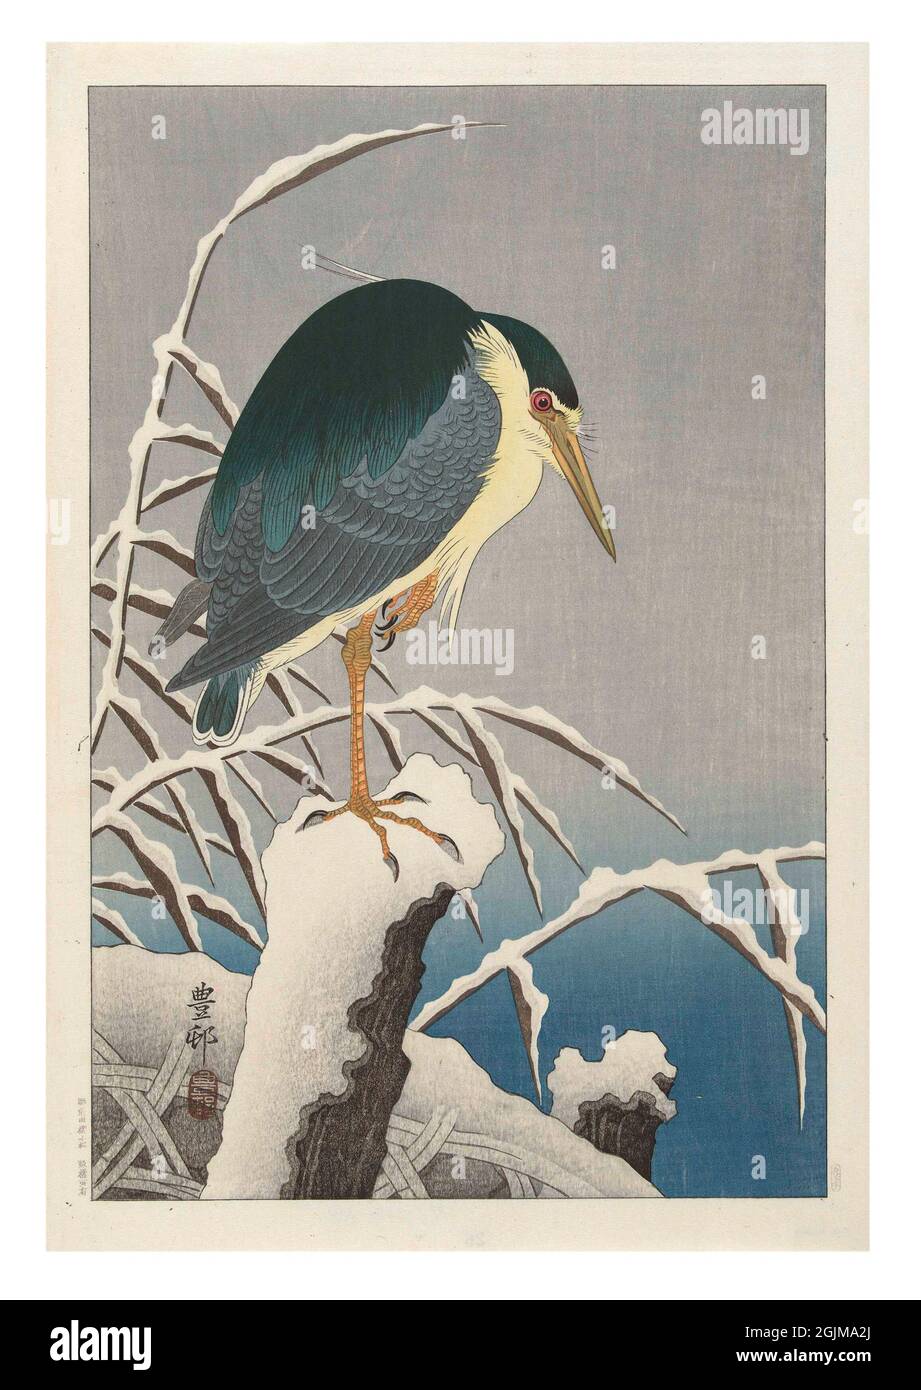 Reiher auf einem Bein auf verschneite Stange stehend. Schneebedecktes Schilf im Hintergrund. Digital optimierte japanische Holzschnitt-Illustration des 19. Jahrhunderts. Stockfoto